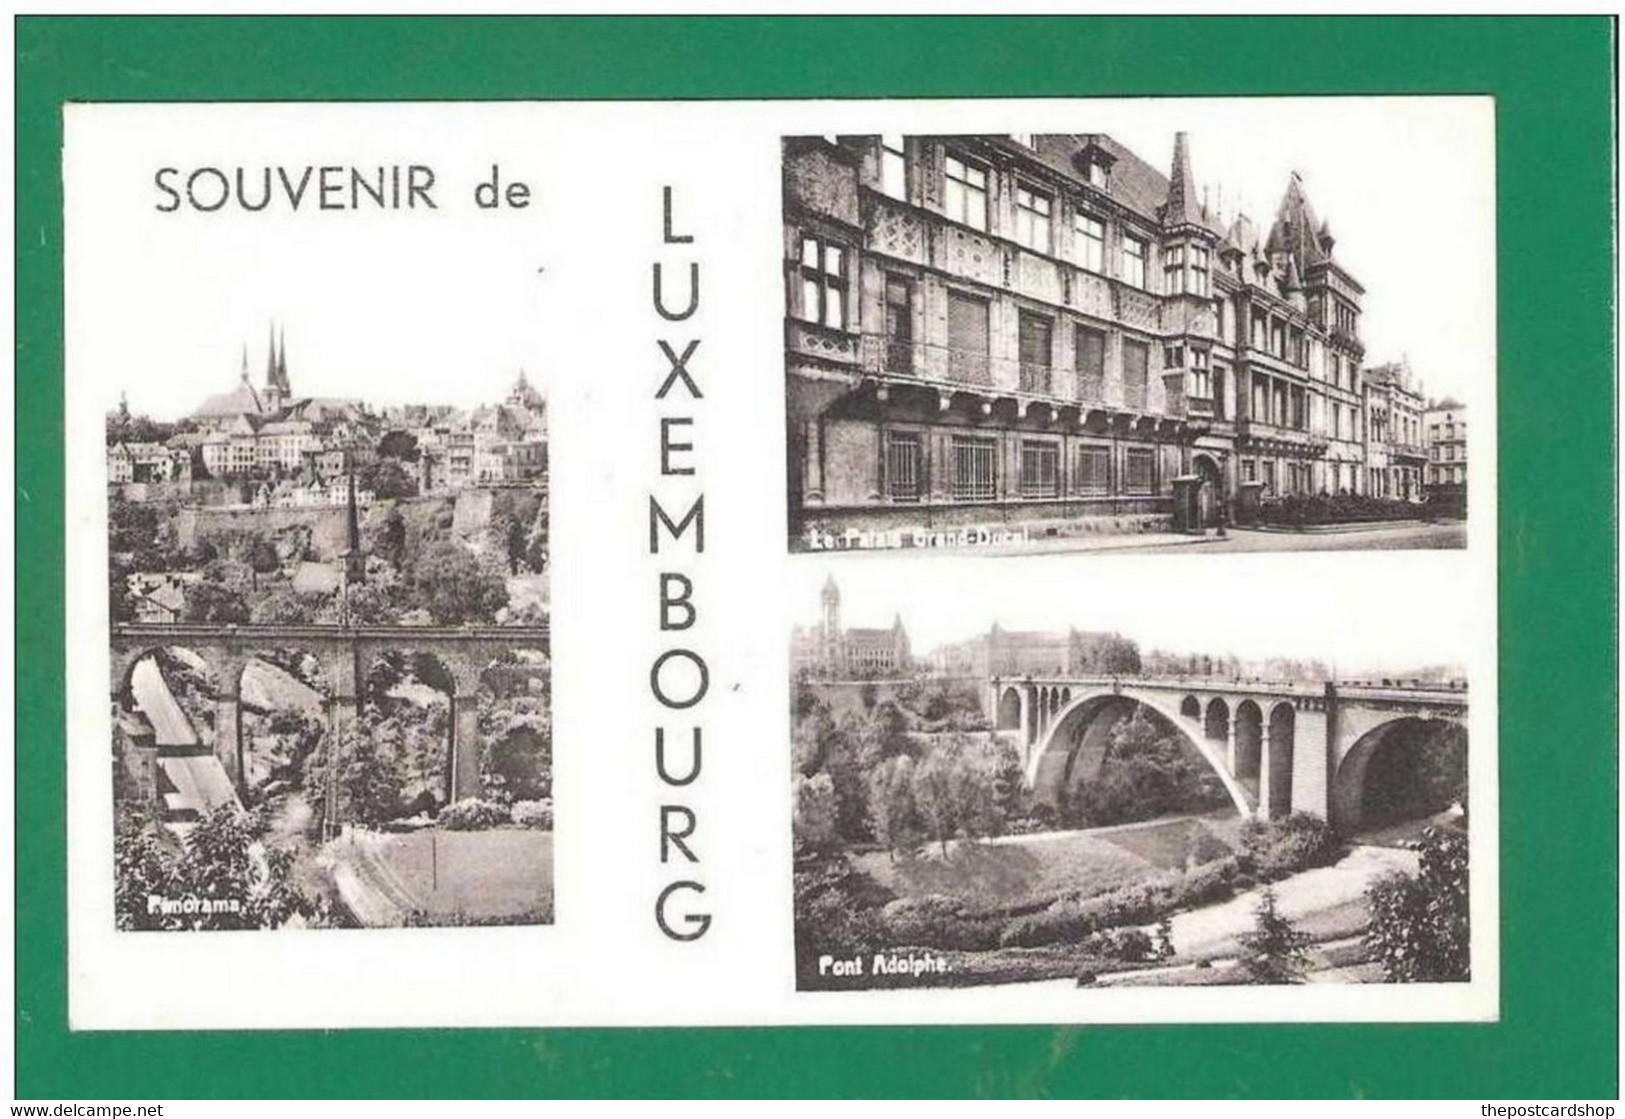 SOUVENIR DE LUXEMBOURG MULTIVIEW - Luxembourg - Ville